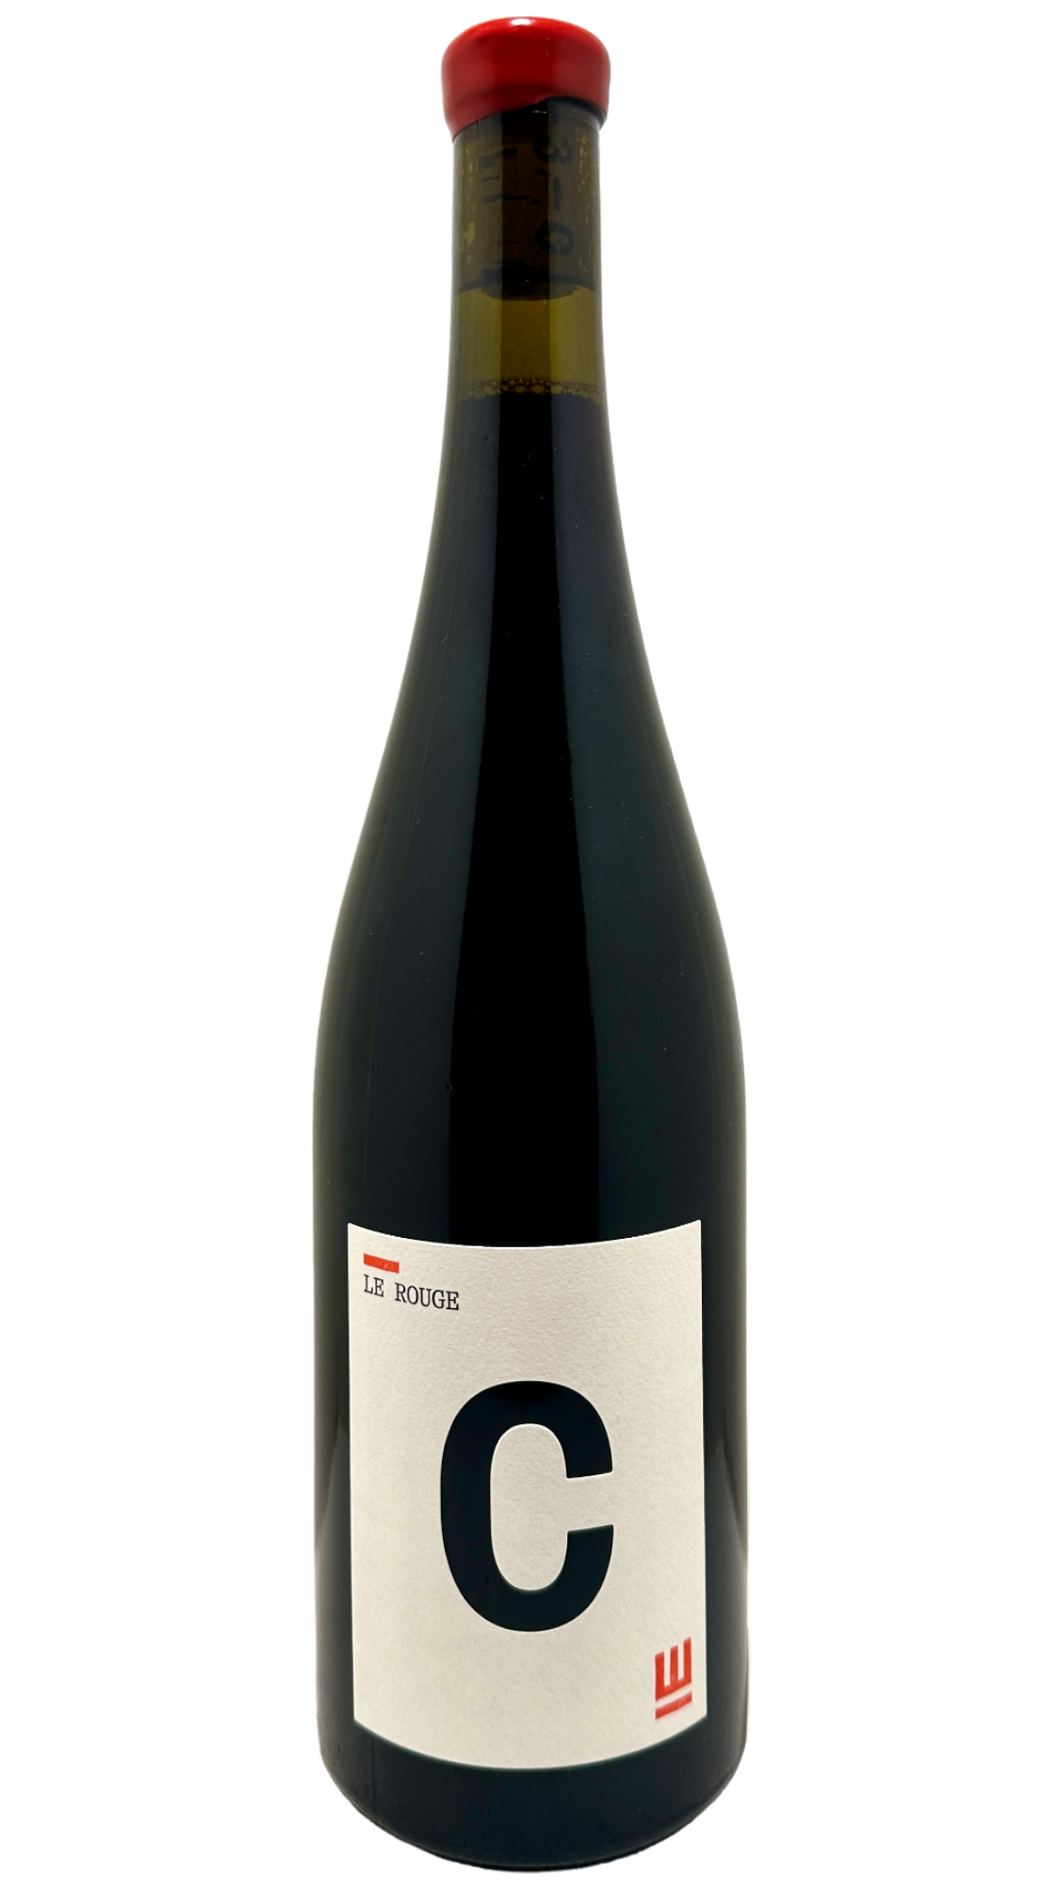 Vin d'alsace alsacien wine biologique biodynamie organic wine domaine pierre weber cuvée le rouge pinot noir vin rouge red wine